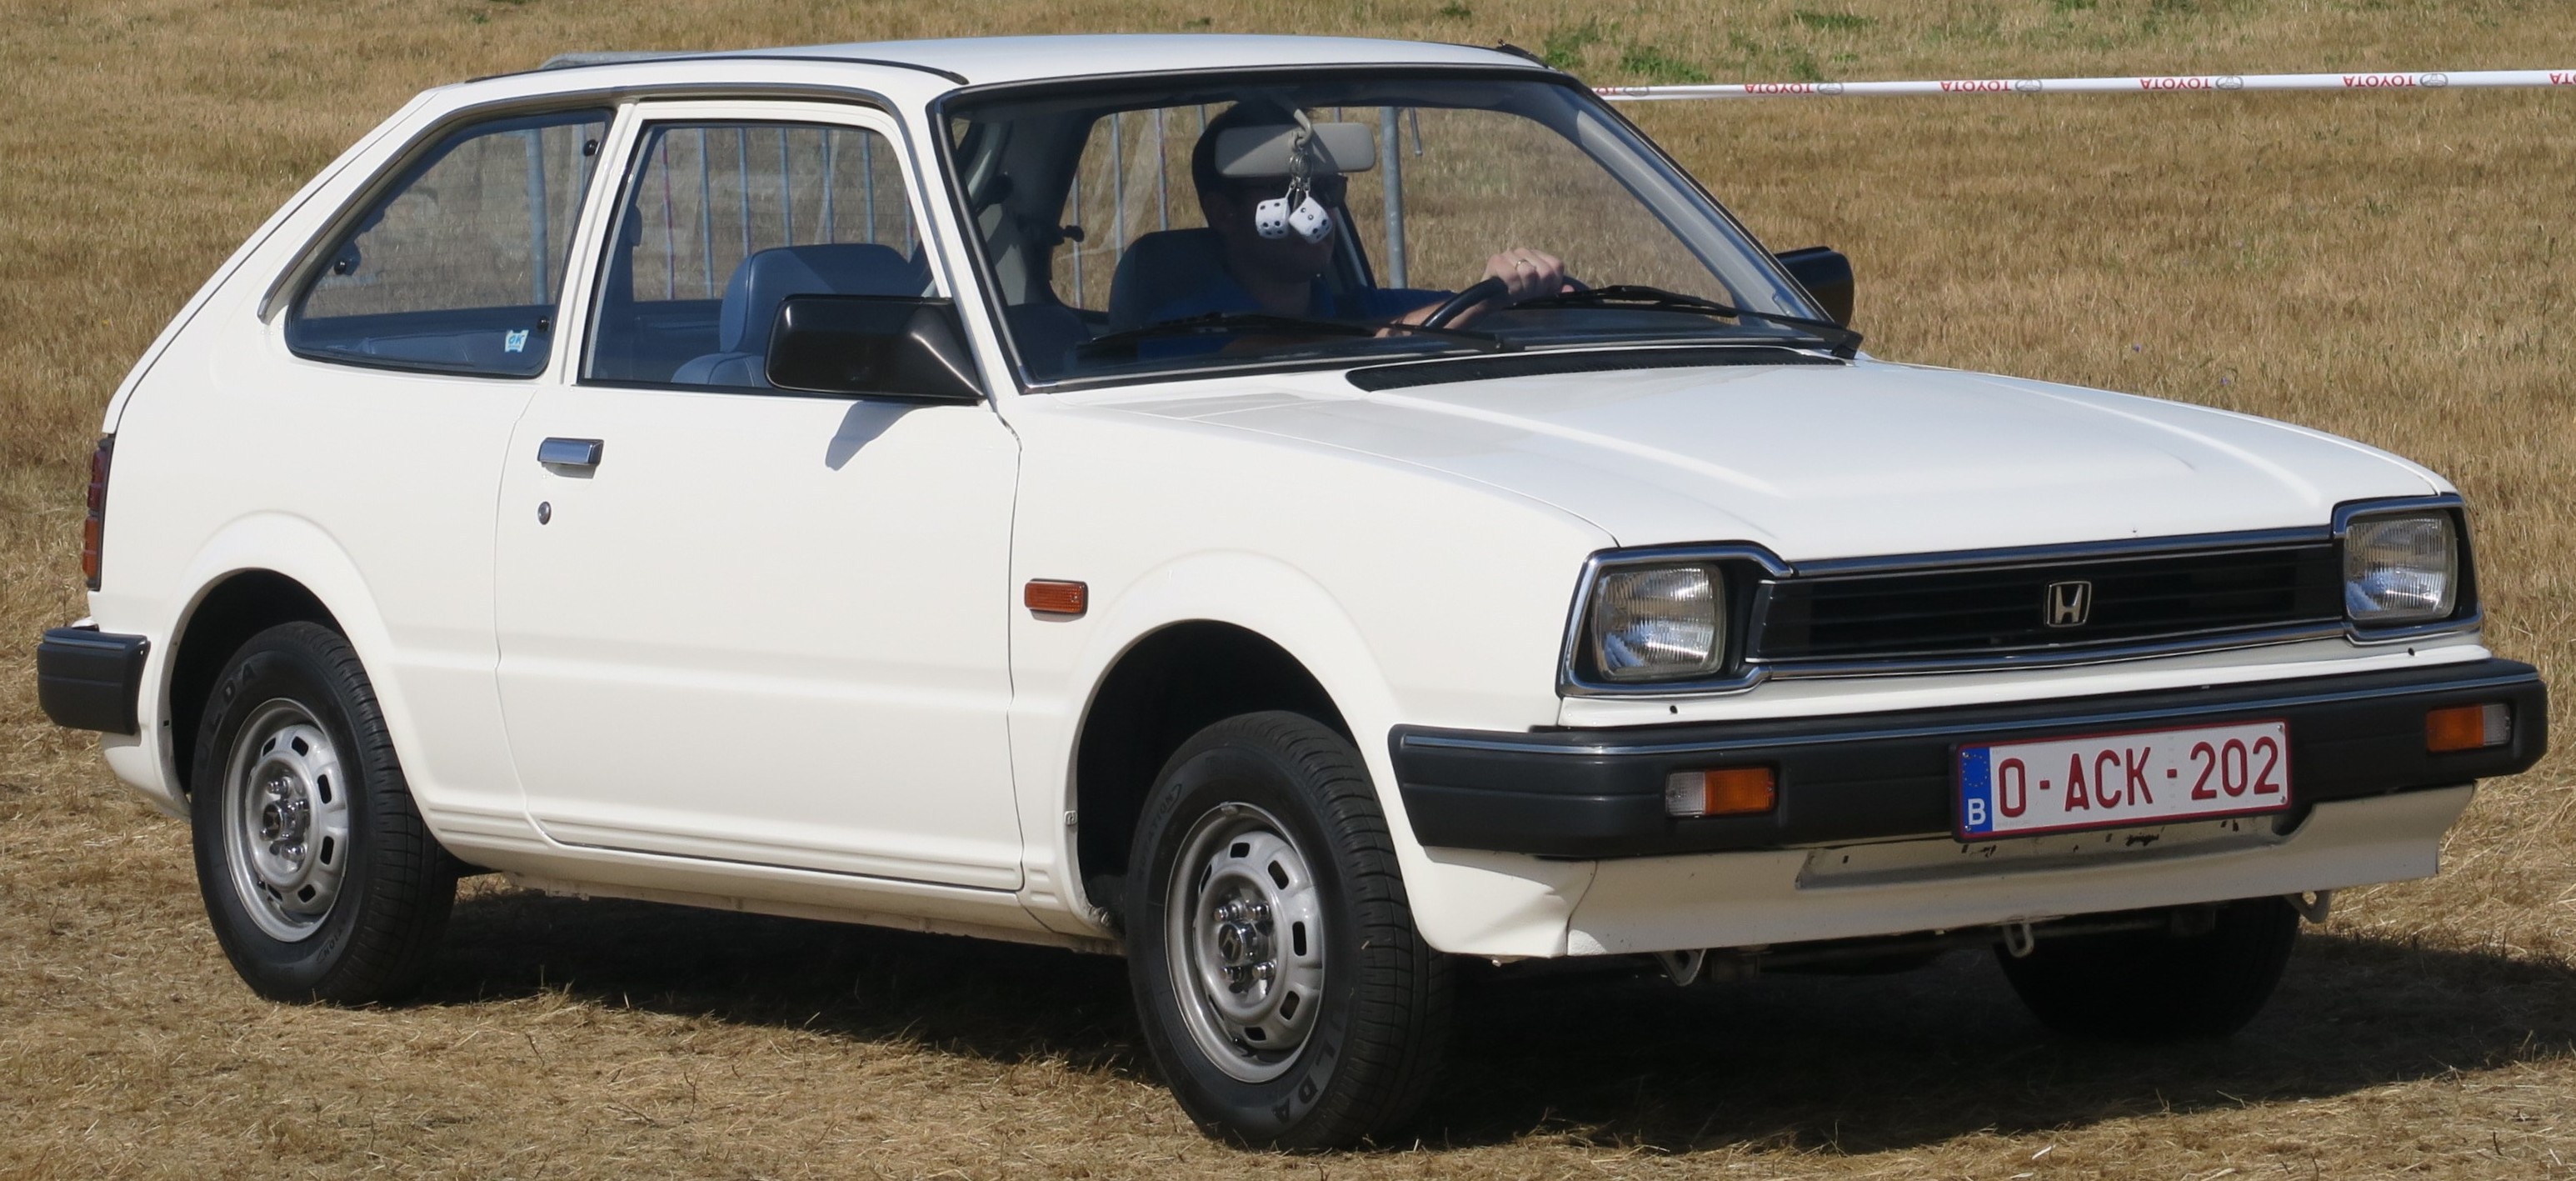 Honda Civic 1980. O carro é branco, possui para-choque e grades na cor preta.